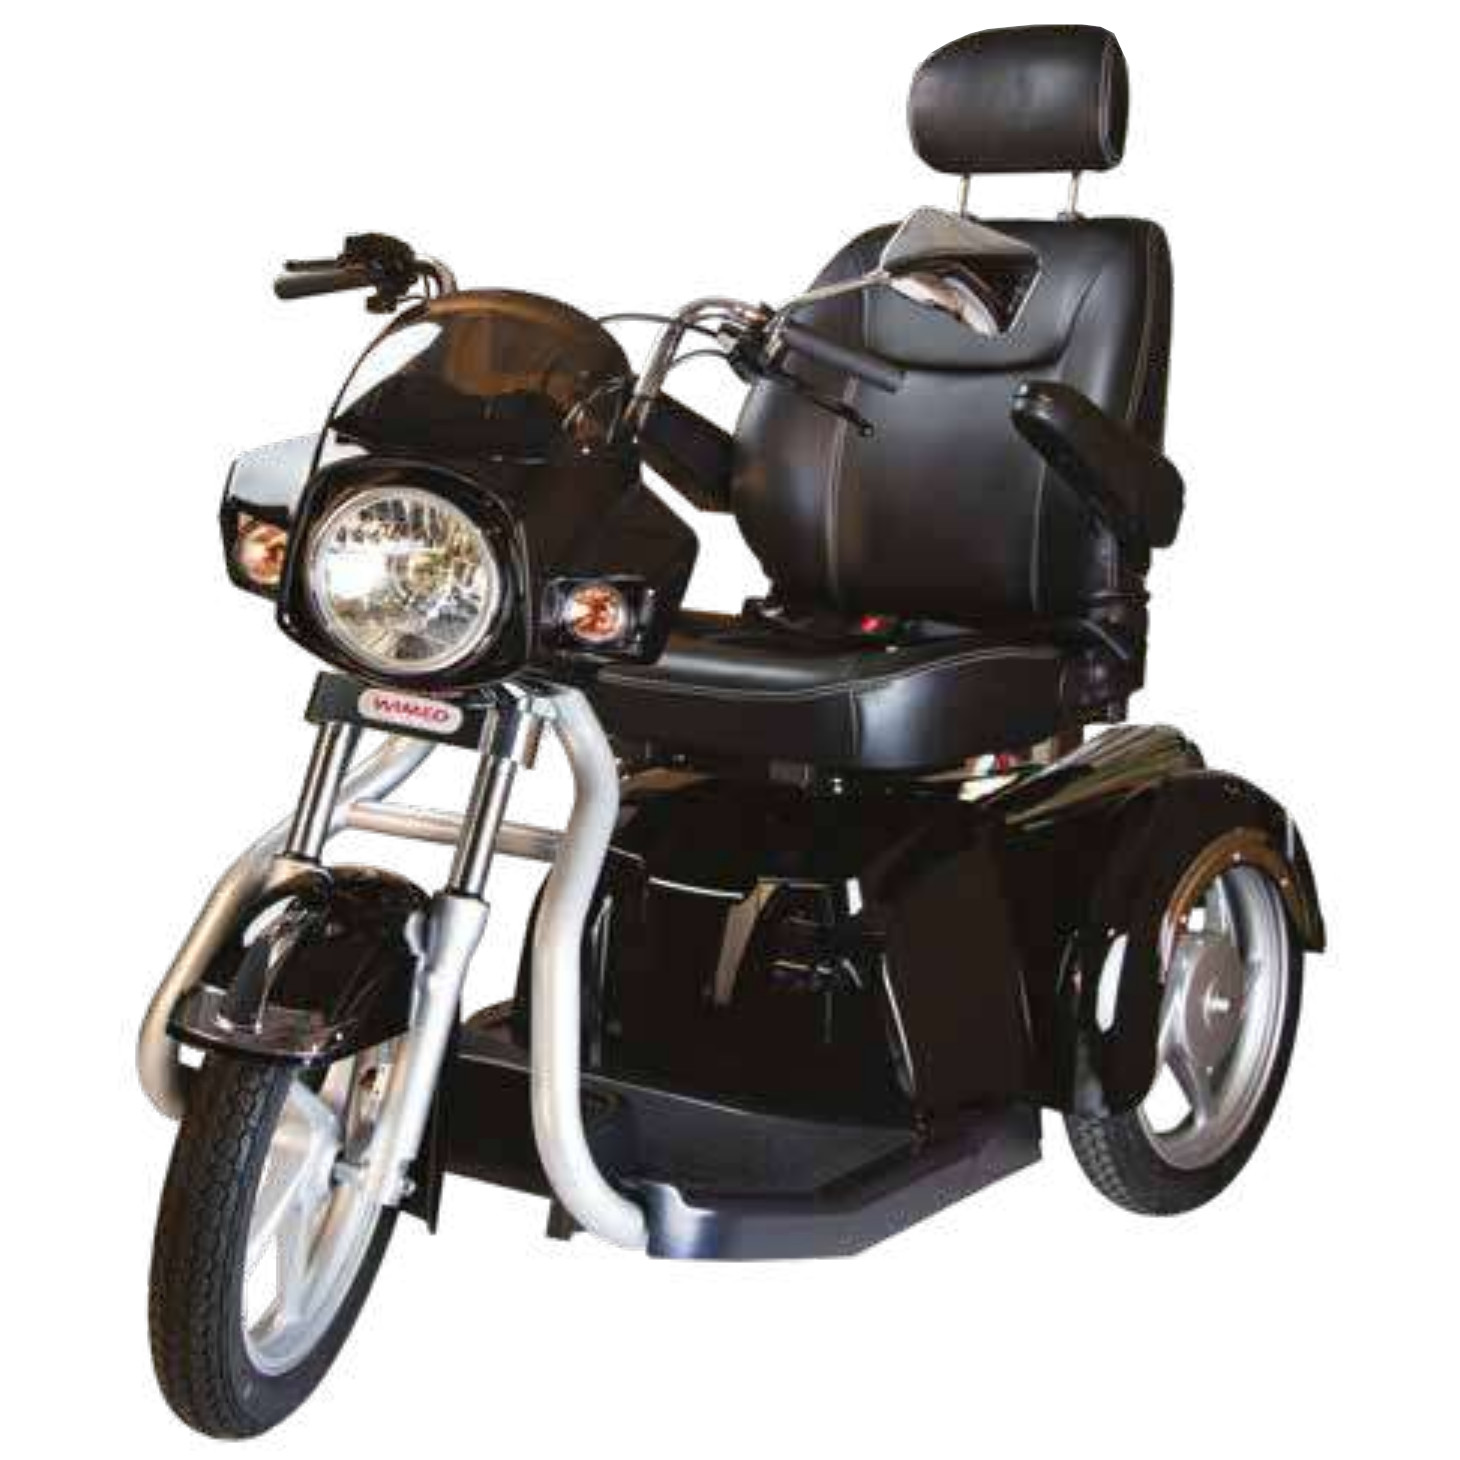 Scooter con motore potente per anziani a 3 ruote